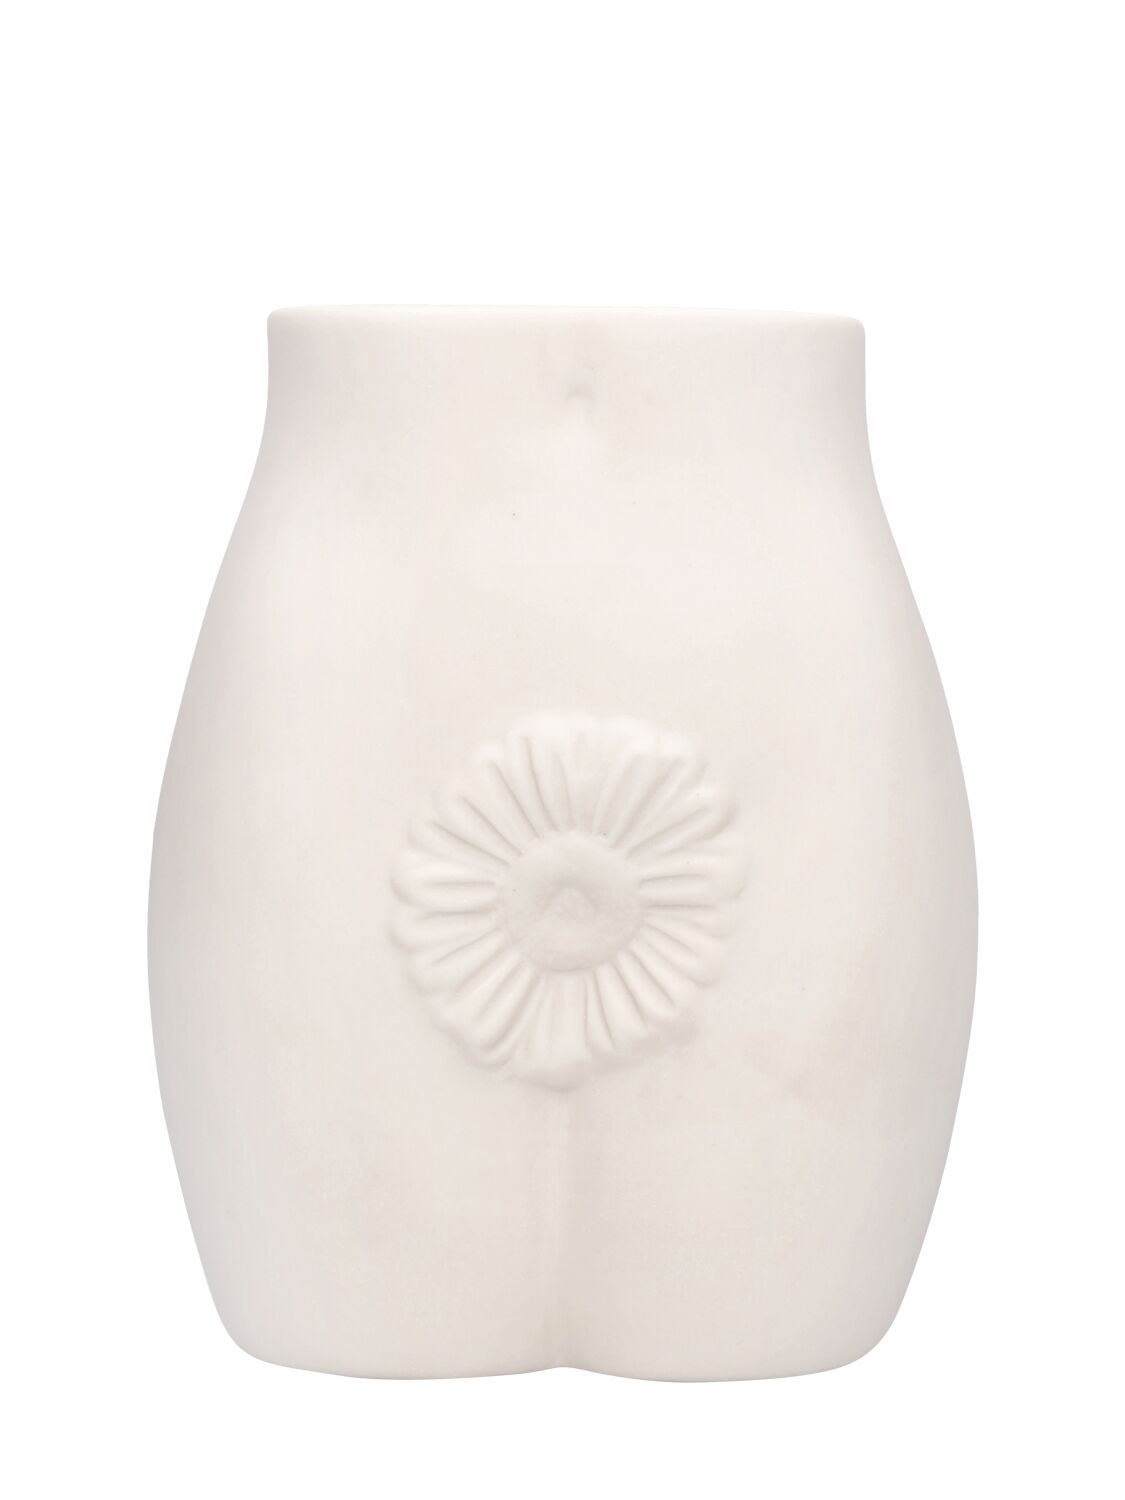 Jonathan Adler Edie Vase In White